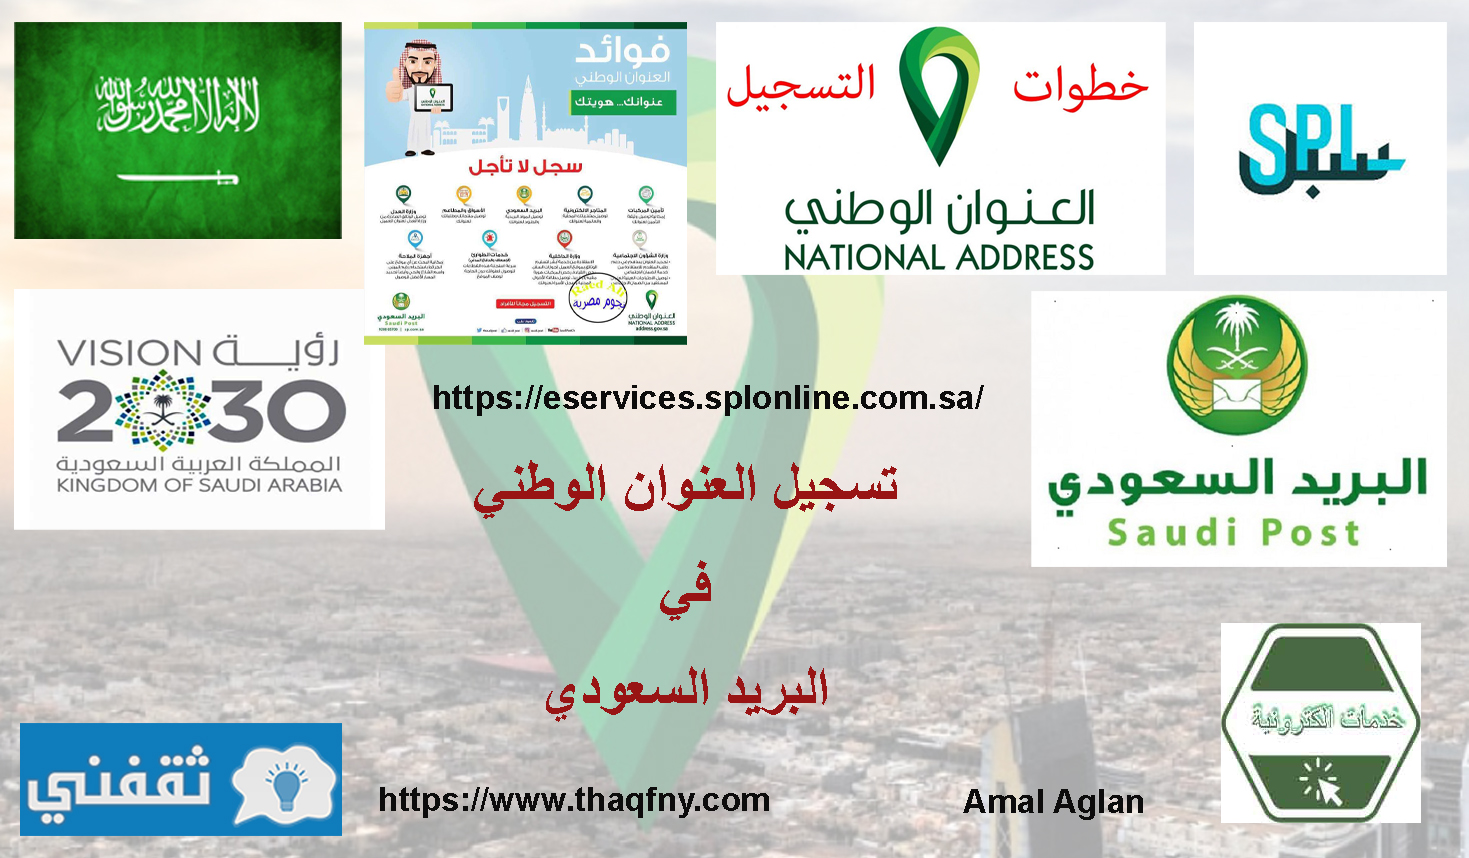 تسجيل العنوان الوطني في البريد السعودي ورابط وطريقة التسجيل بالمملكة